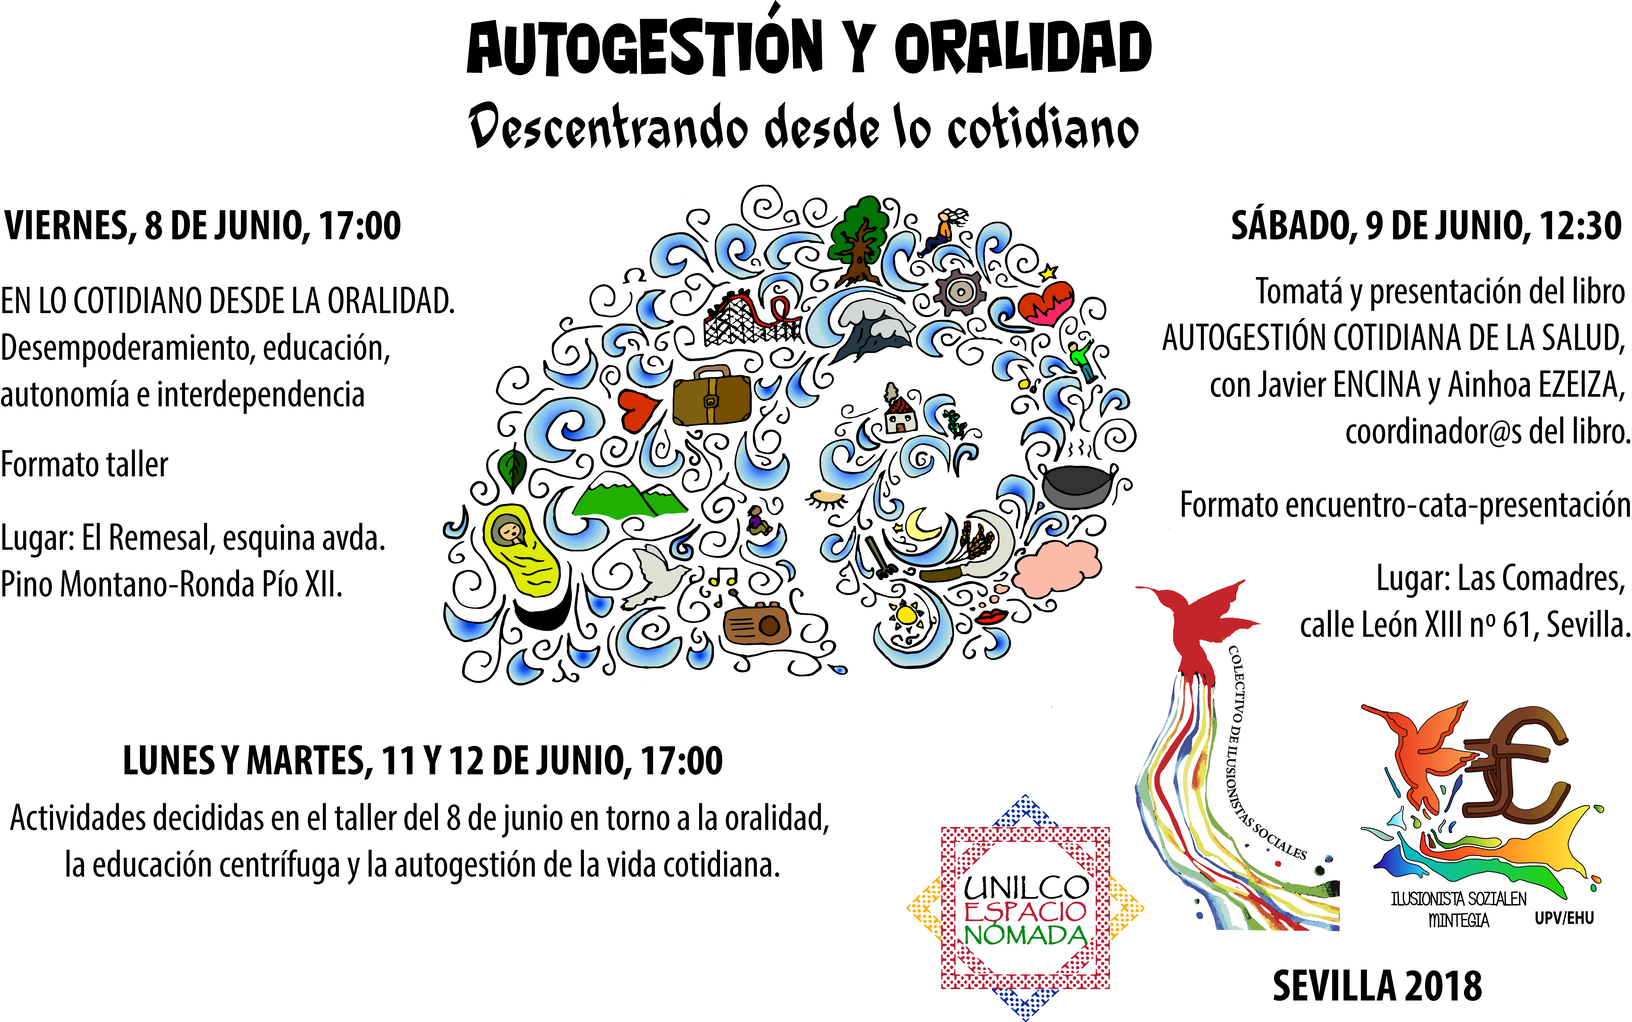 Autogestión y Oralidad - Sevilla 2018 (cartel)